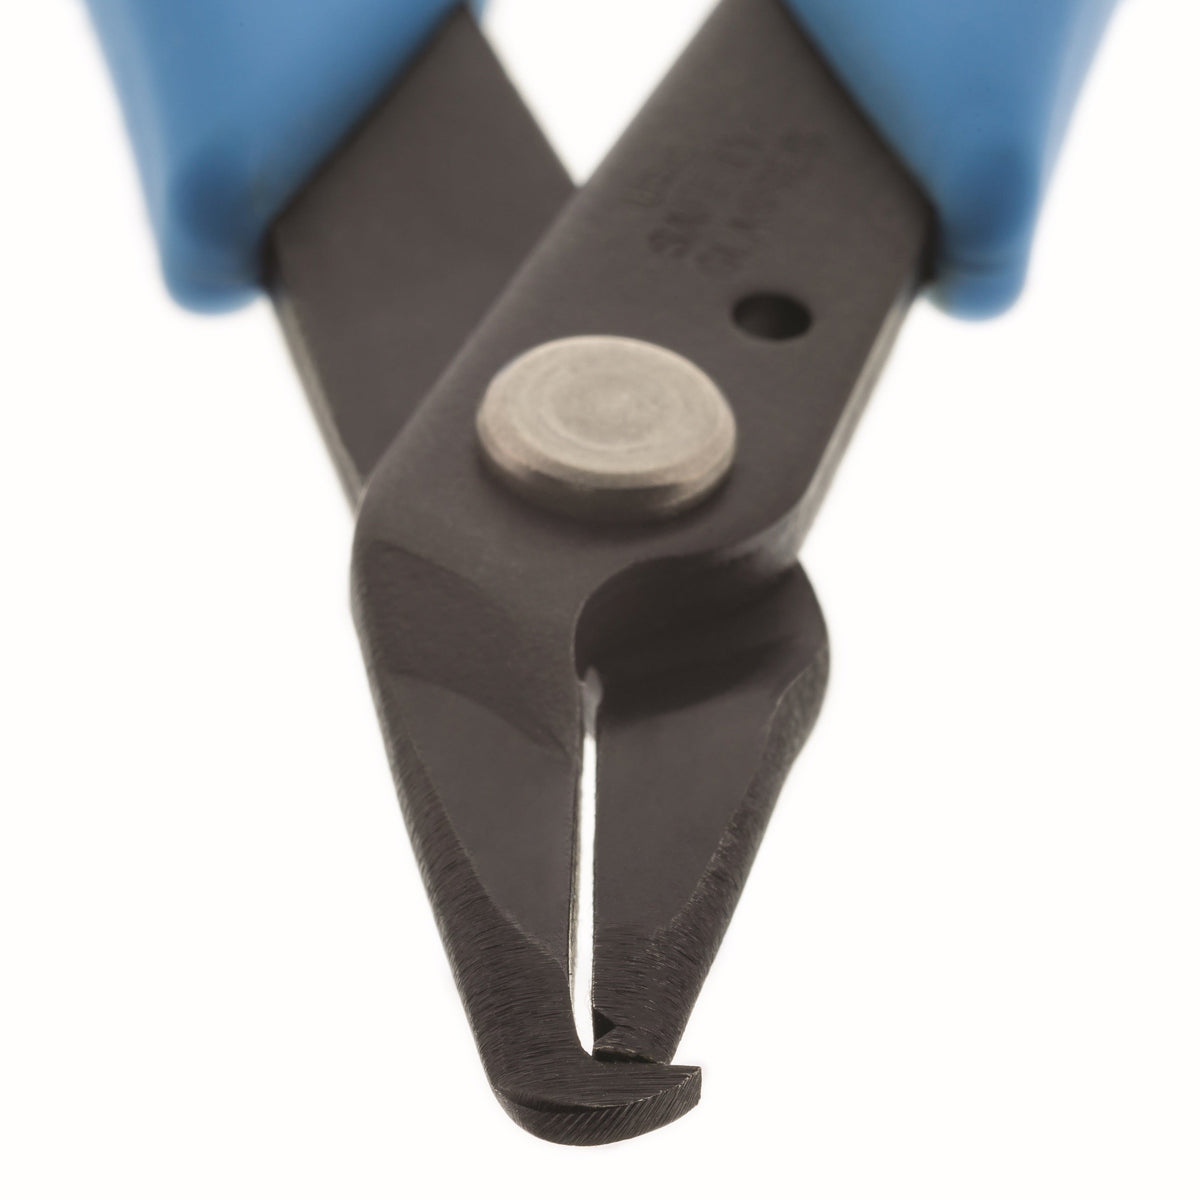 Split Ring Pliers - Rx Smart Gear